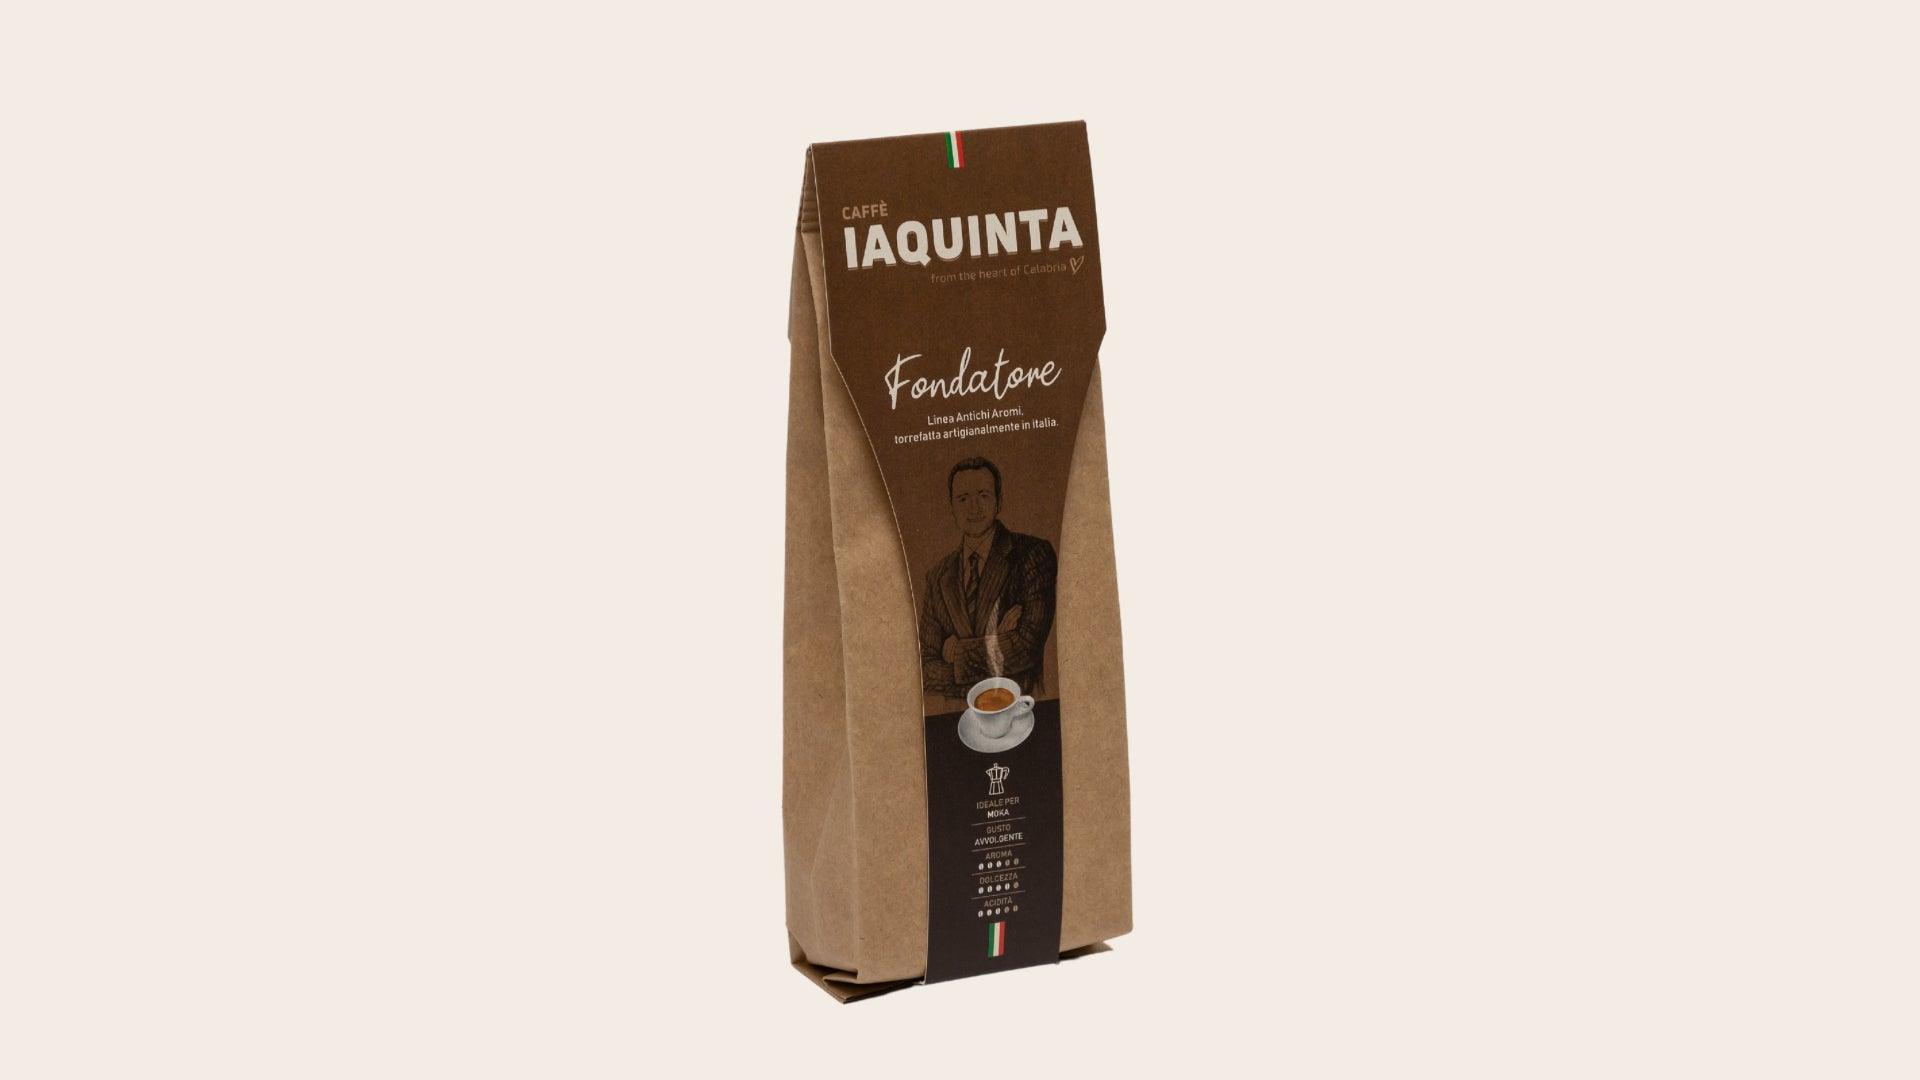 FONDATORE - 70% Arabica - Caffè Iaquinta